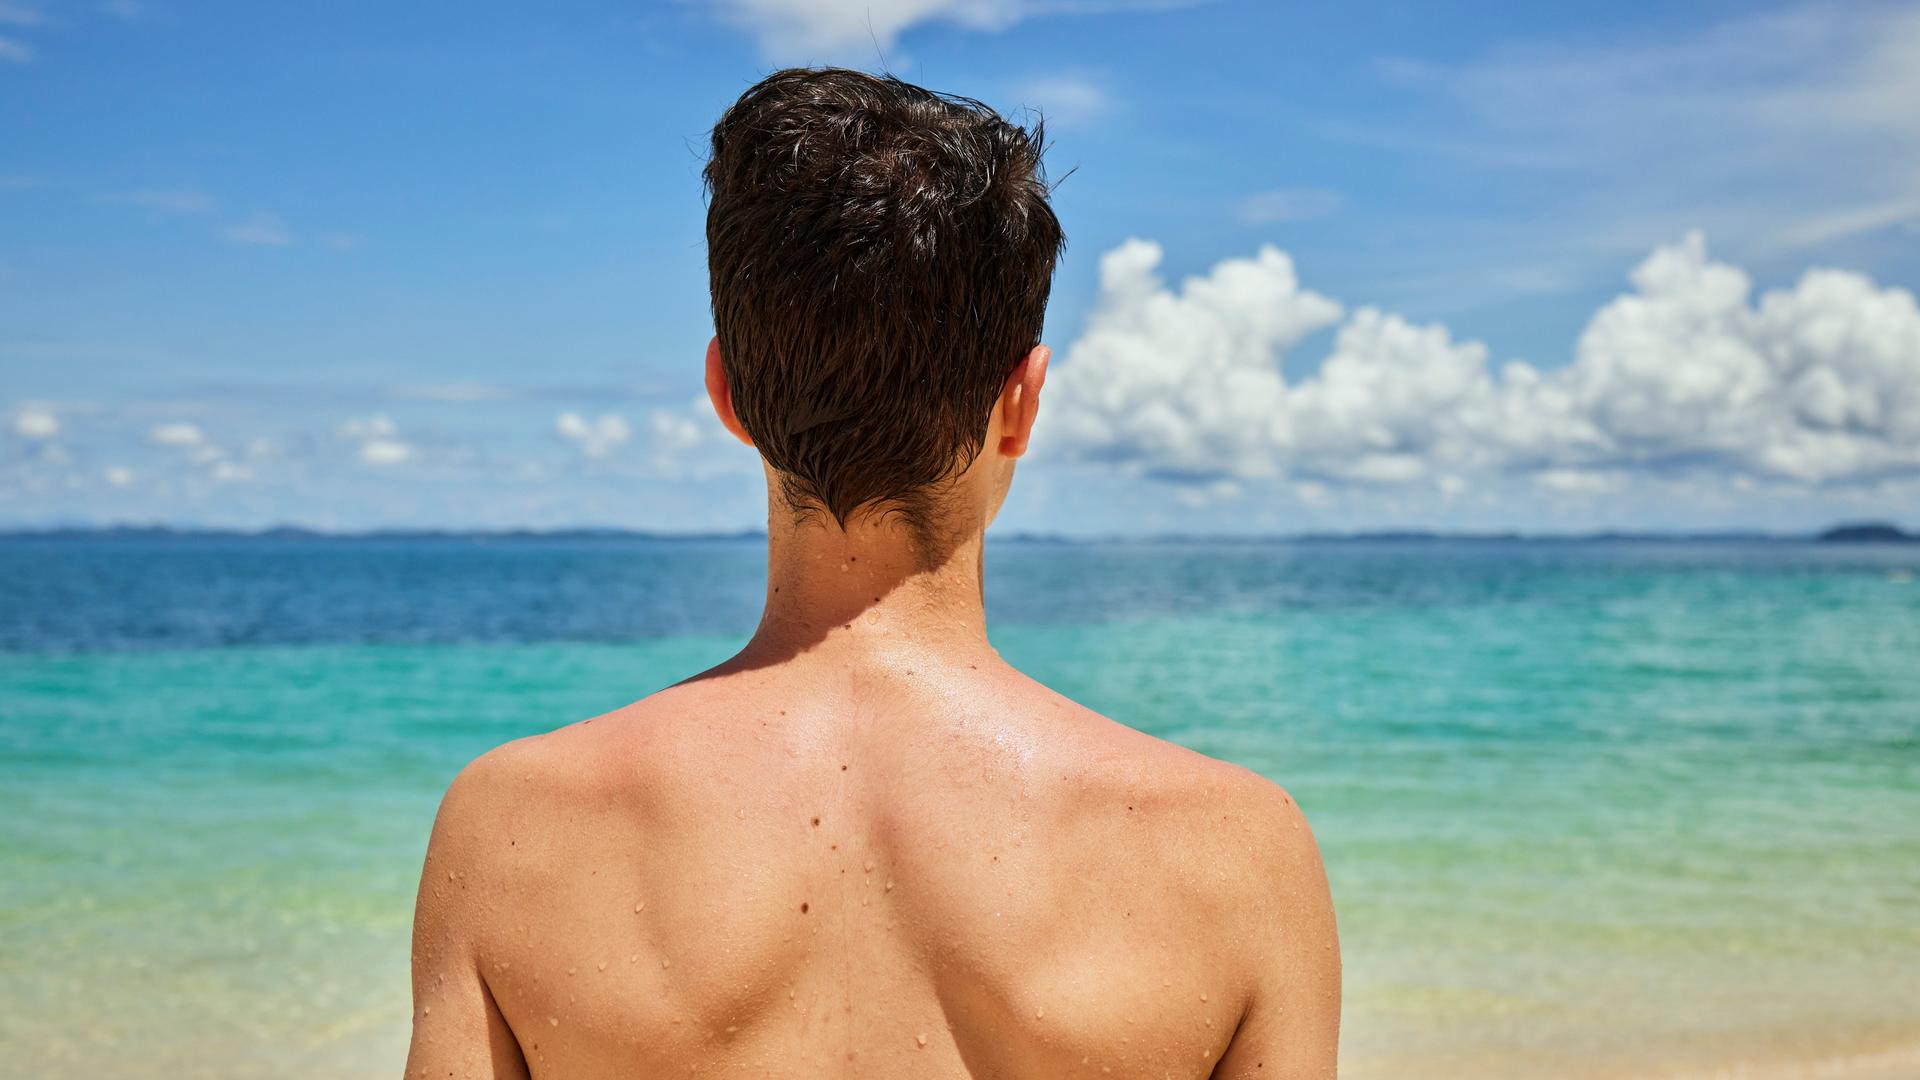 Eine Person mit einigen Muttermalen auf dem Rücken steht am Strand und schaut auf das blau-türkisene Meer hinaus.